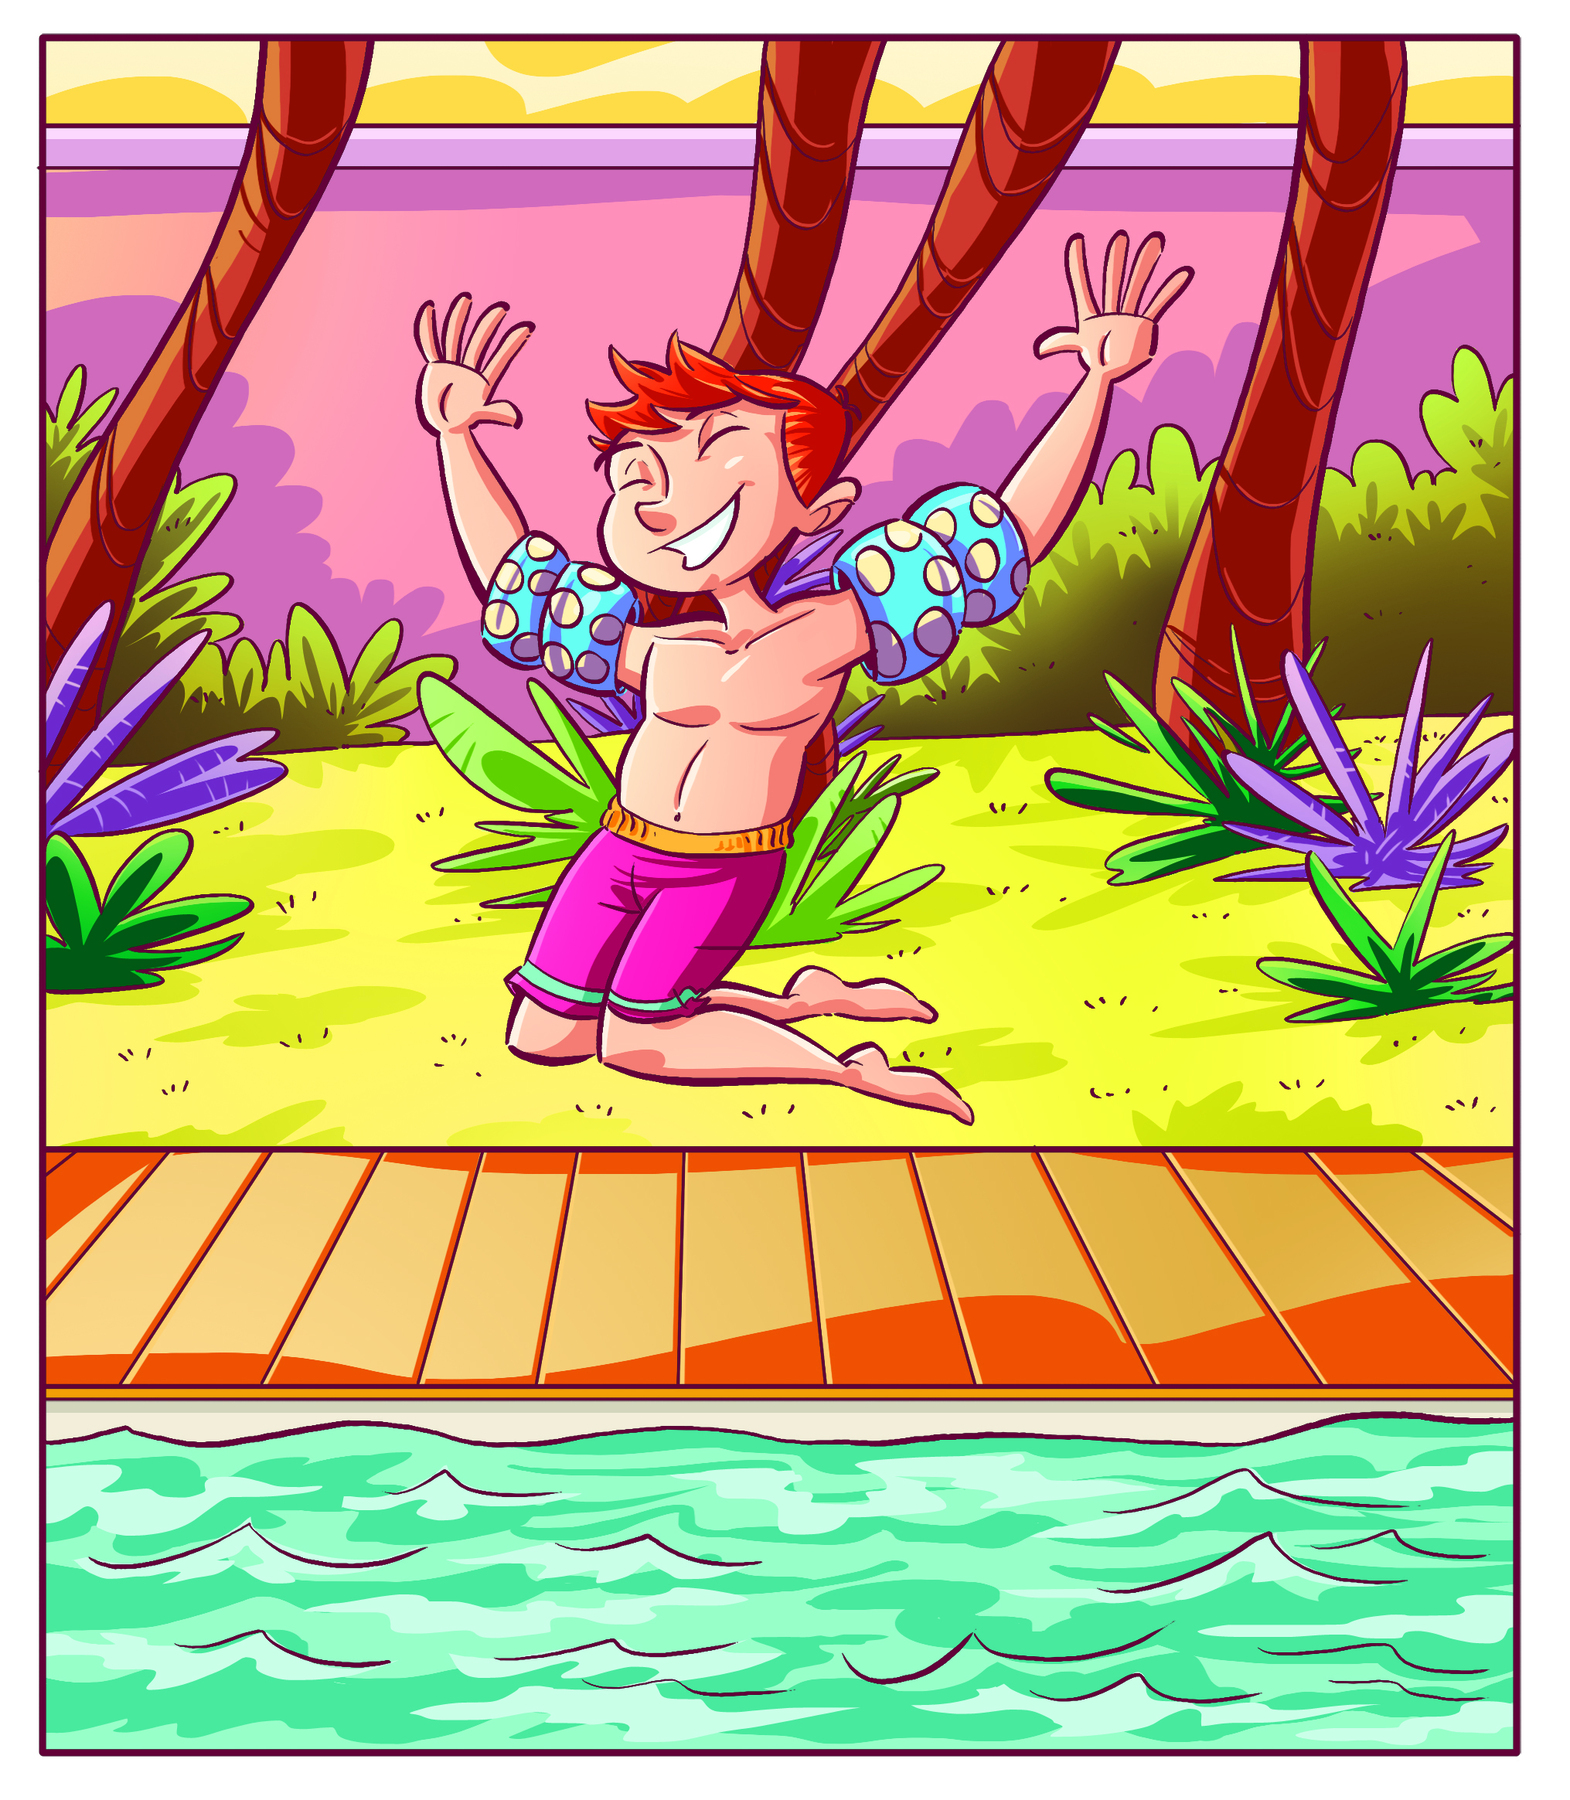 Ilustração. Menino branco e ruivo, vestindo bermuda rosa e boias nos braços. Está com os dois braços levantados e com as mãos espalmadas para frente, ajoelhado na grama. Atrás, troncos de árvores e plantas. Em sua frente, piscina com borda de madeira.